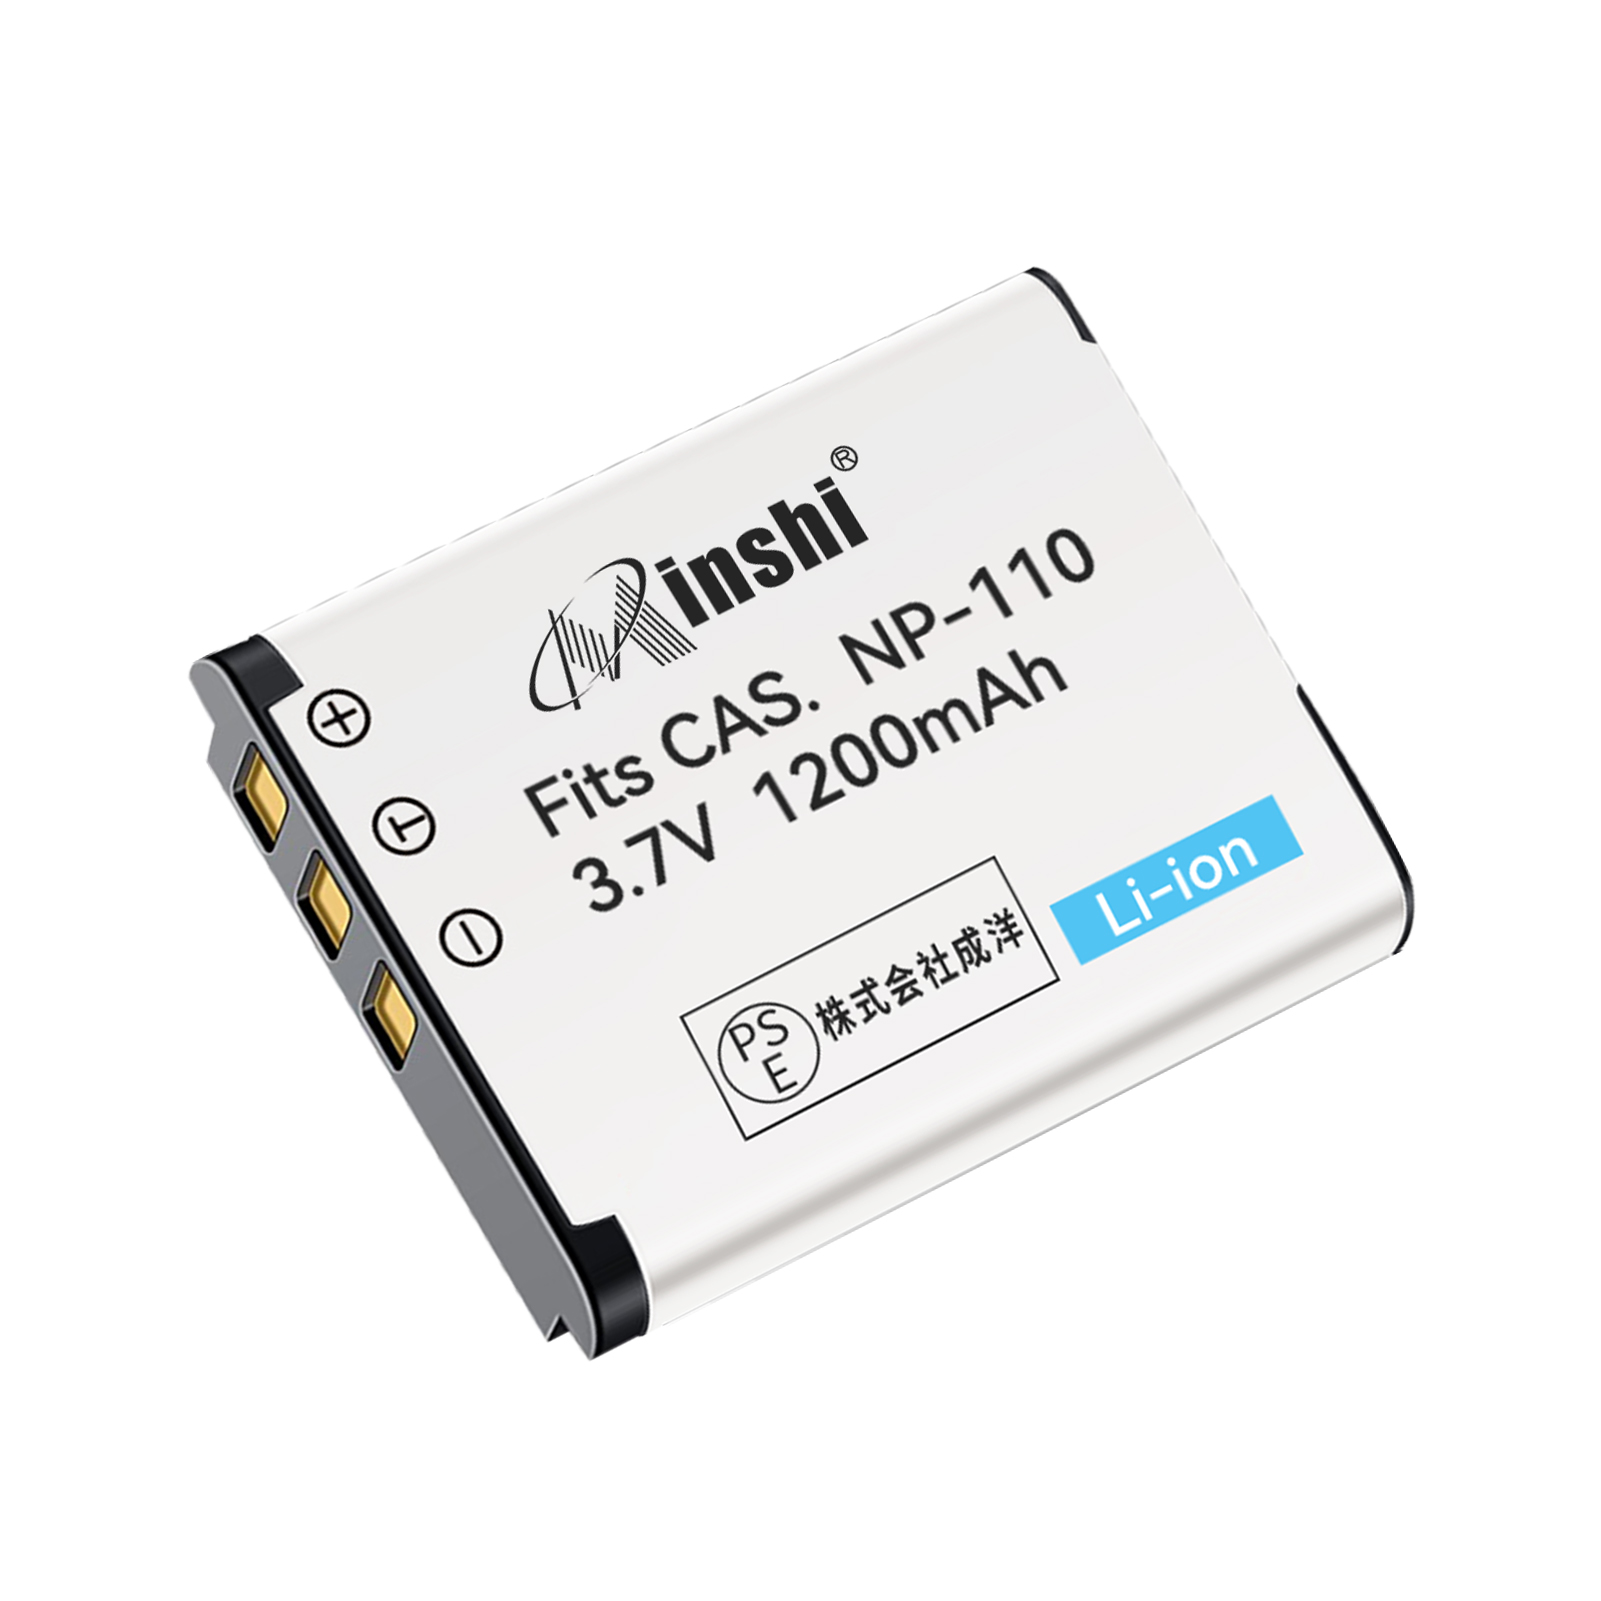 【1年保証】minshi CASIO NP-160【1200mAh 3.7V】PSE認定済 高品質NP-160 NP-110互換バッテリーPHB